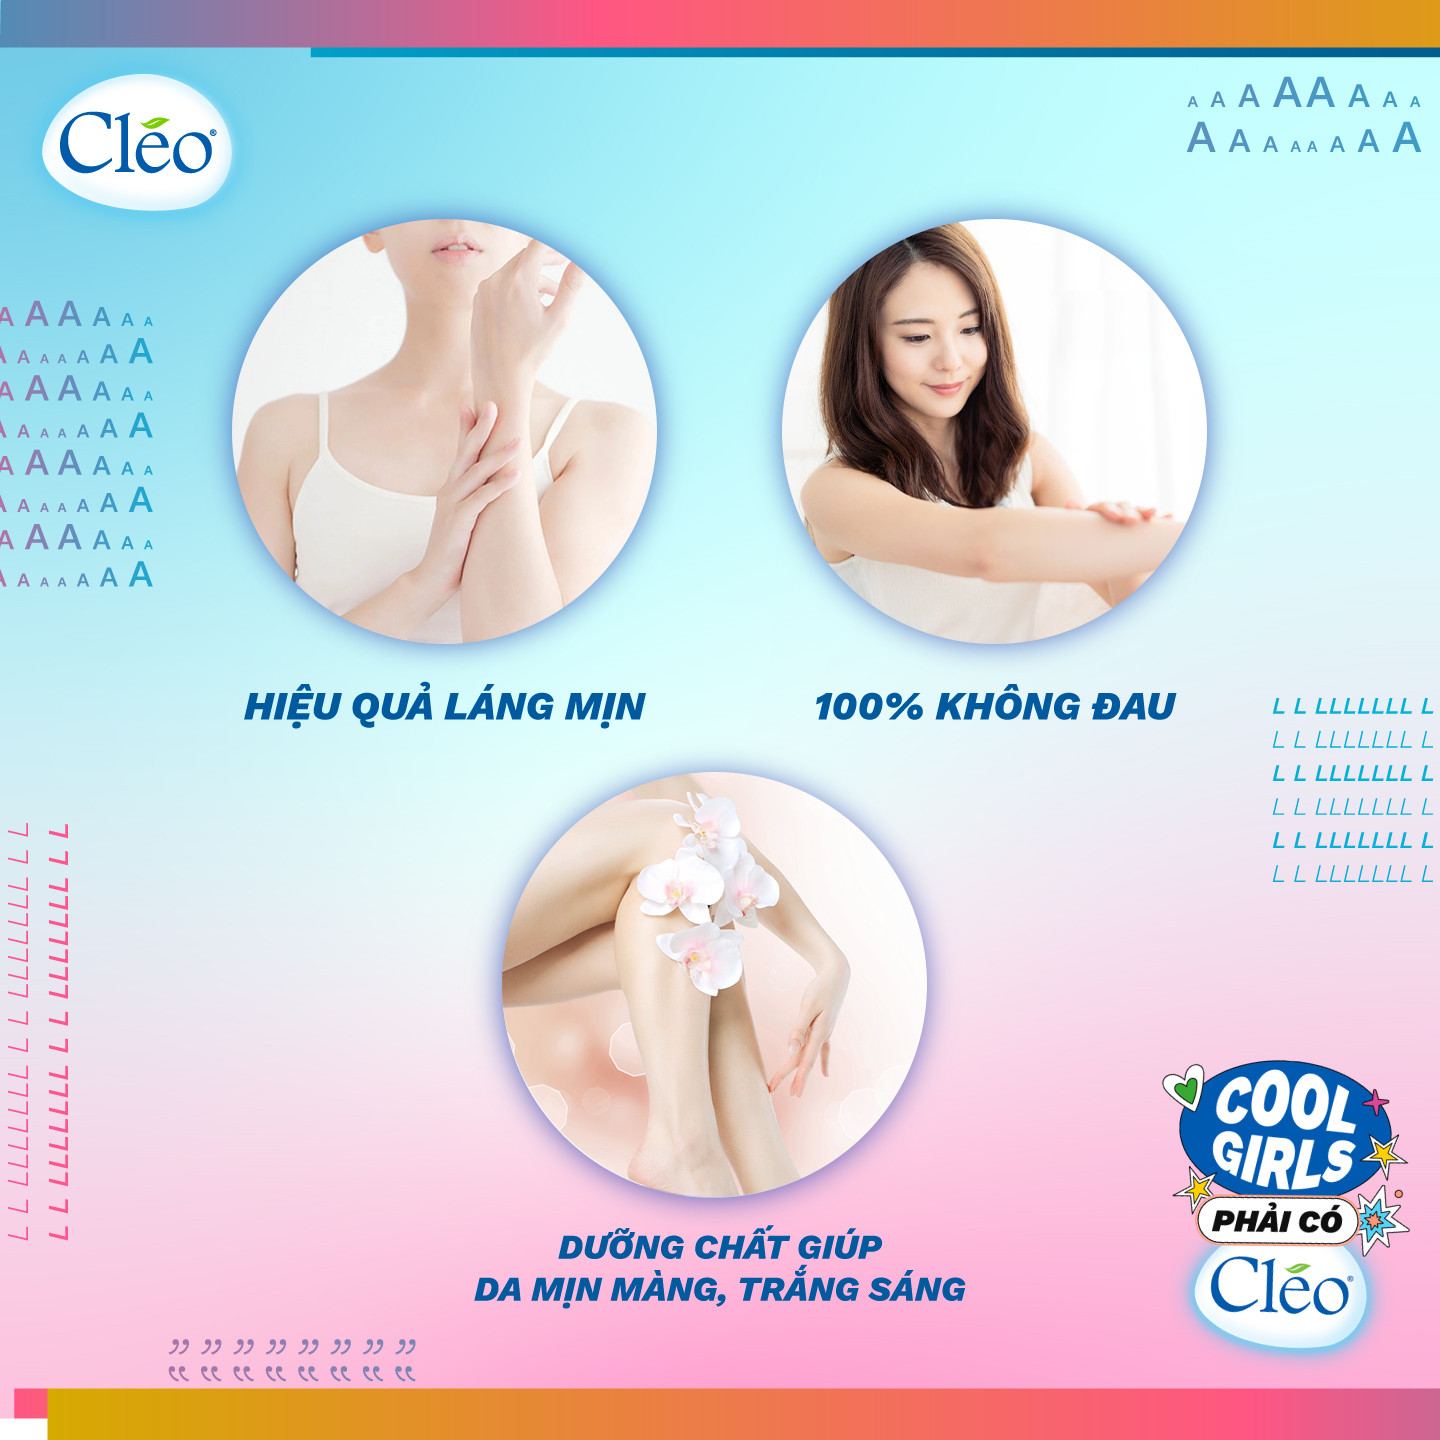 Kem Tẩy Lông Chiết Xuất Bơ Cleo Dành Cho Da Thường 50g, an toàn, không đau và đạt hiệu quả nhanh chóng